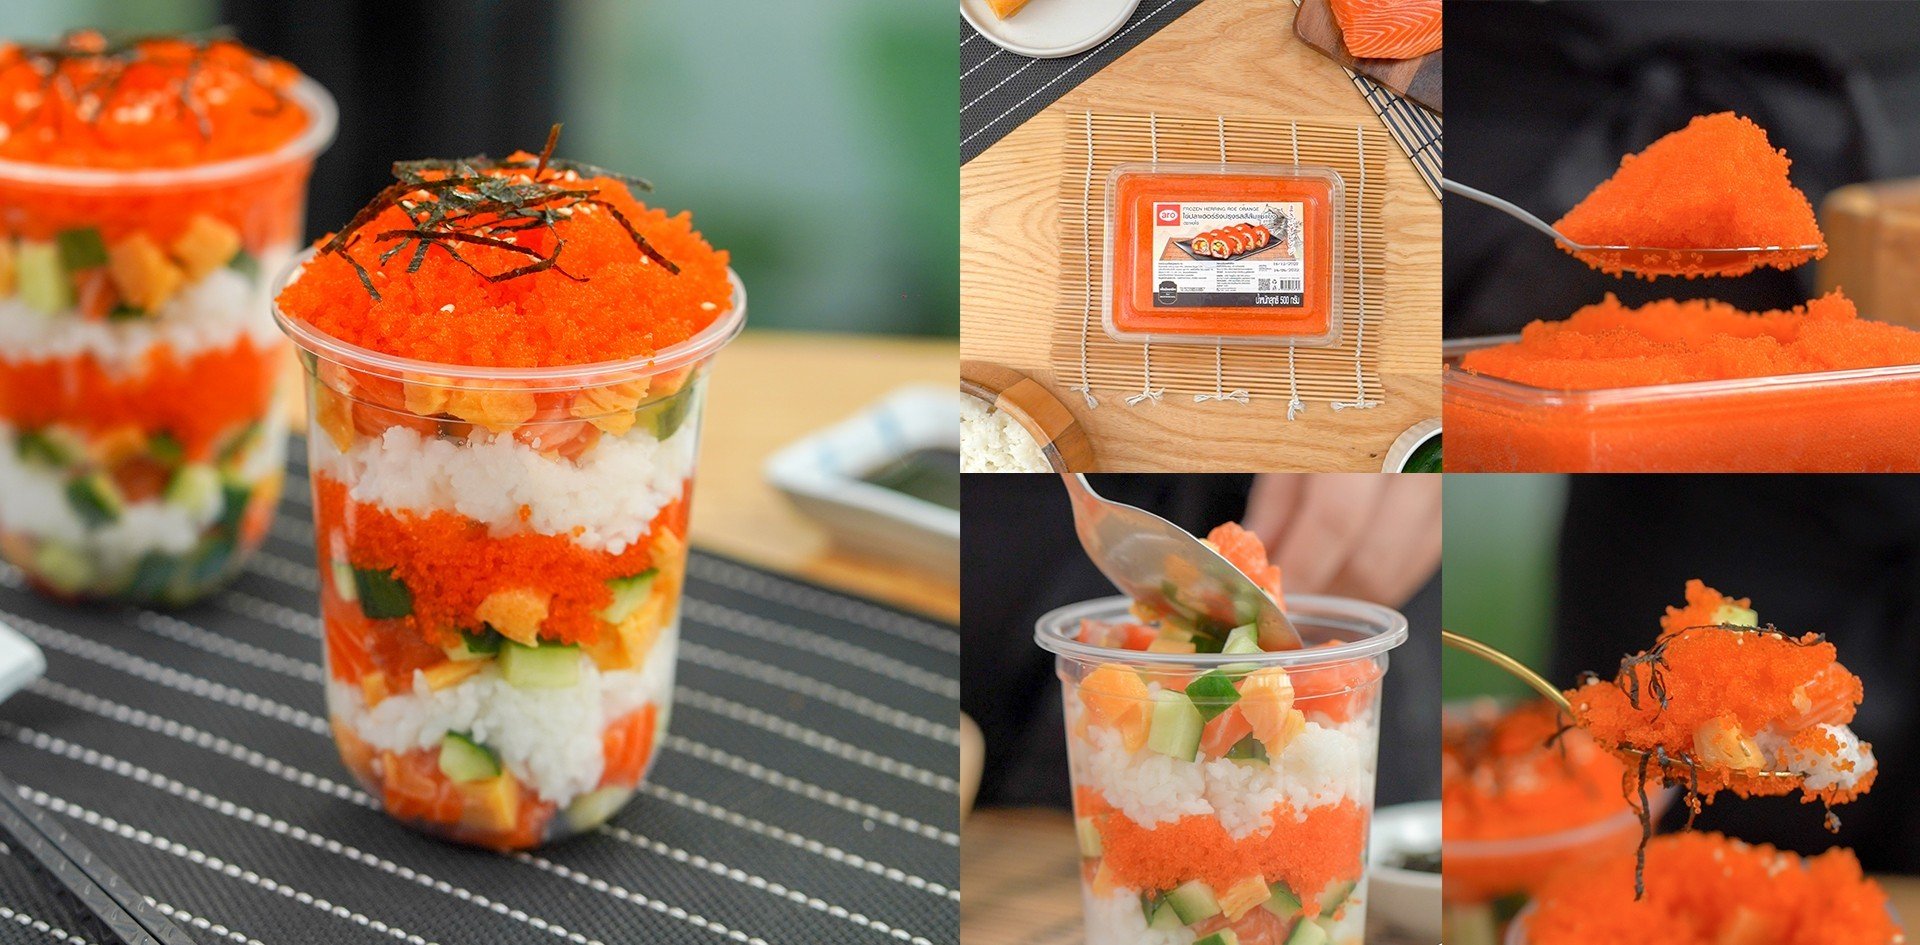 วิธีทำ “Sushi cup” เมนูอาหารญี่ปุ่นทำง่าย เครื่องแน่นเต็มคัพ